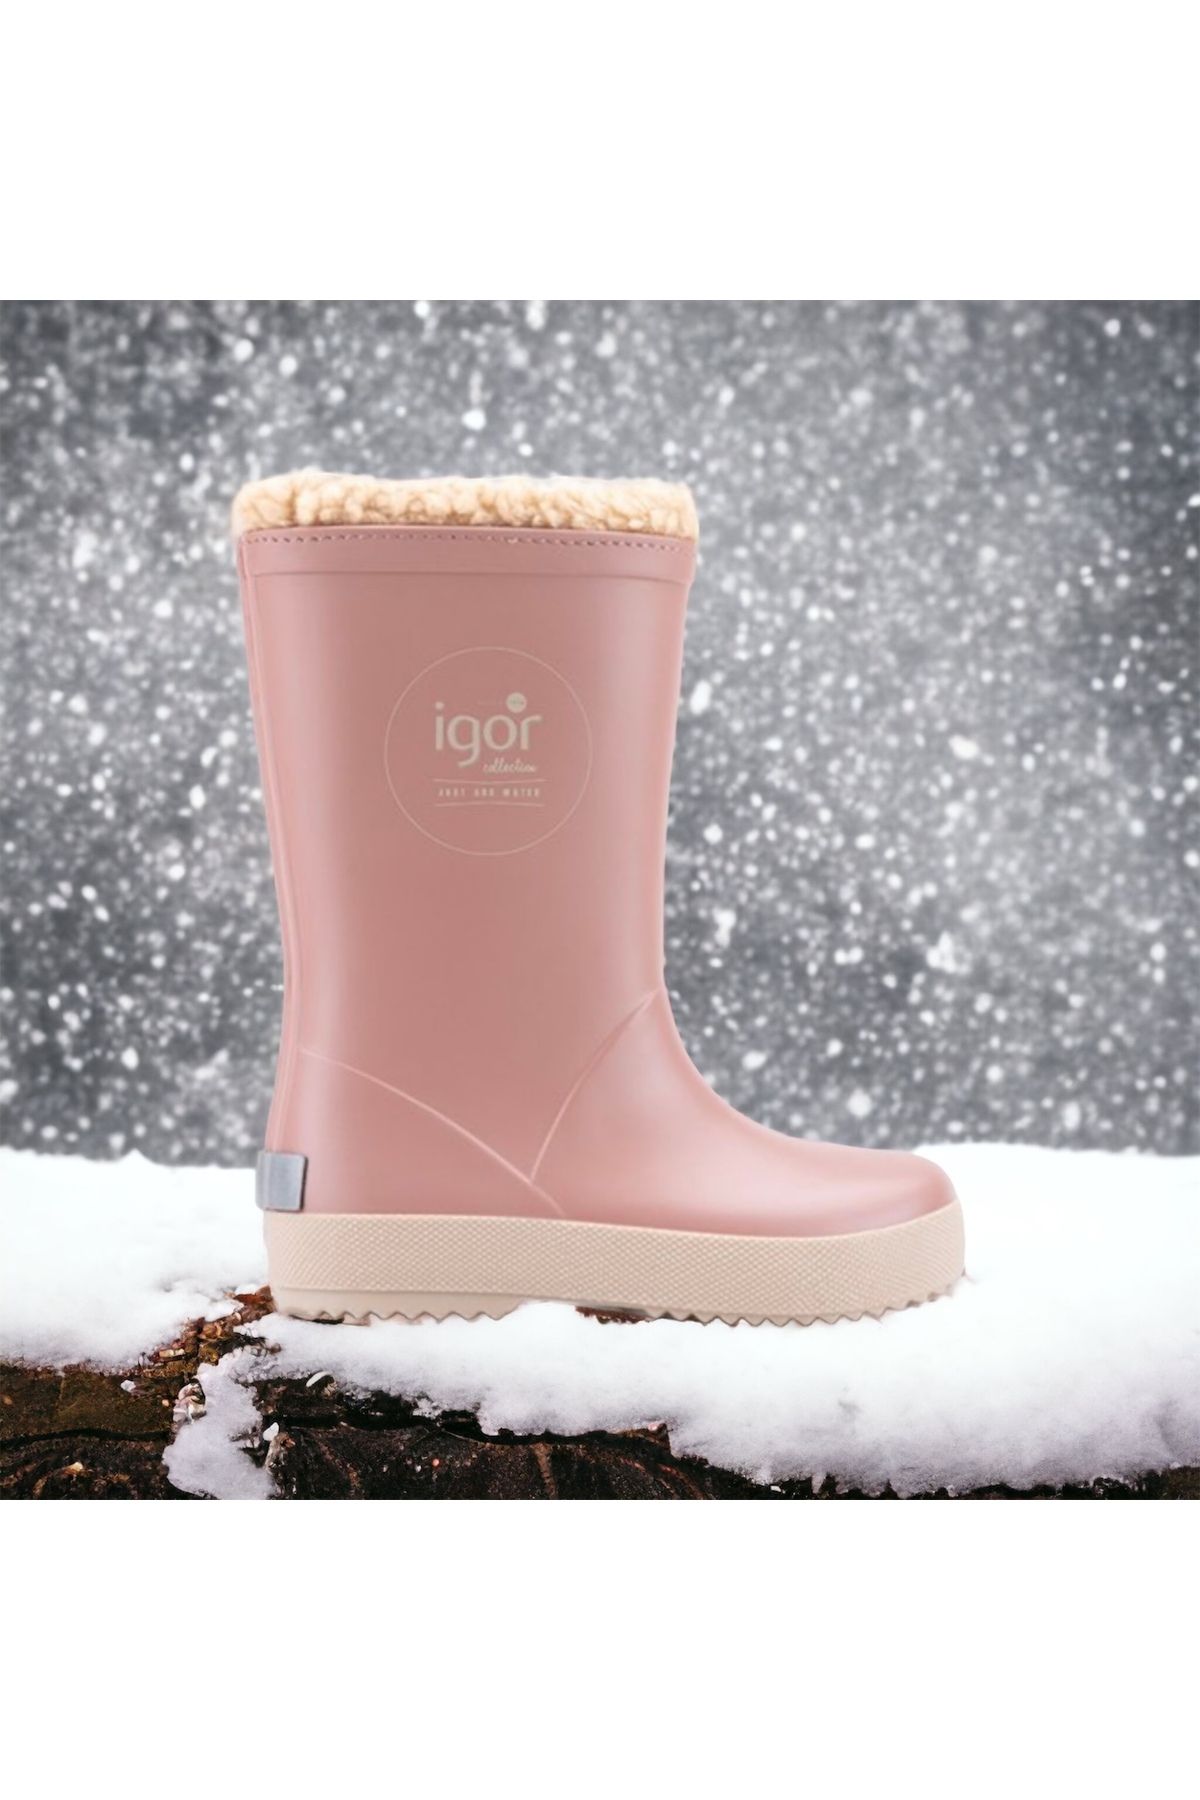 IGOR W10207 Splash unisex çocuk içi kürklü kar botu , yağmur çizmesi , kaymaz taban